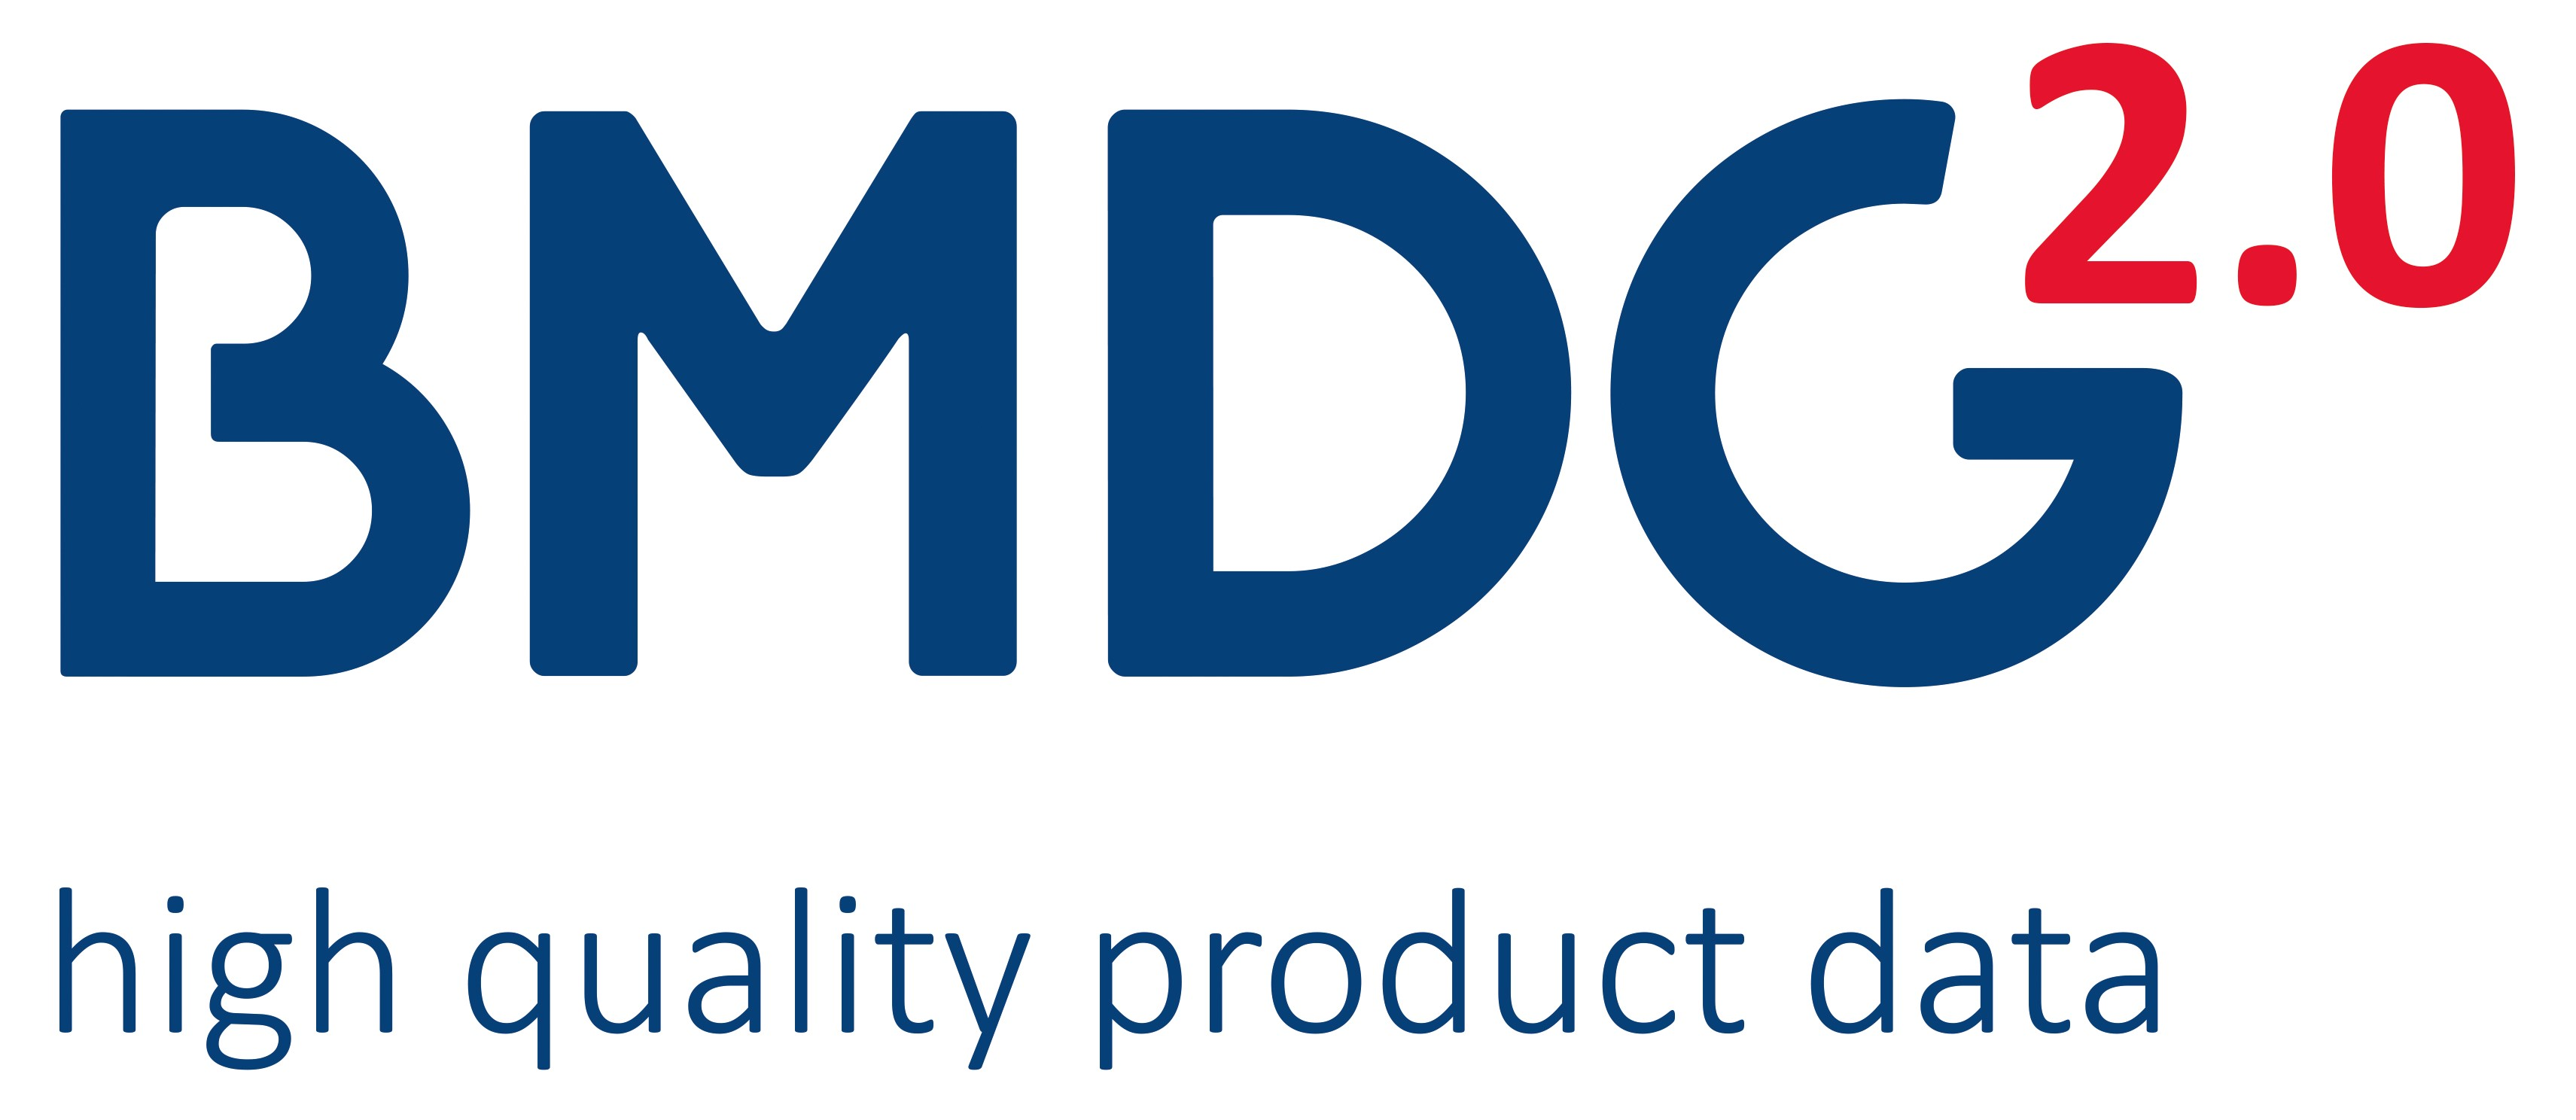 Mit der BMDG 2.0 steht ein zeitgemäßer Standard für Produktdaten zur Verfügung